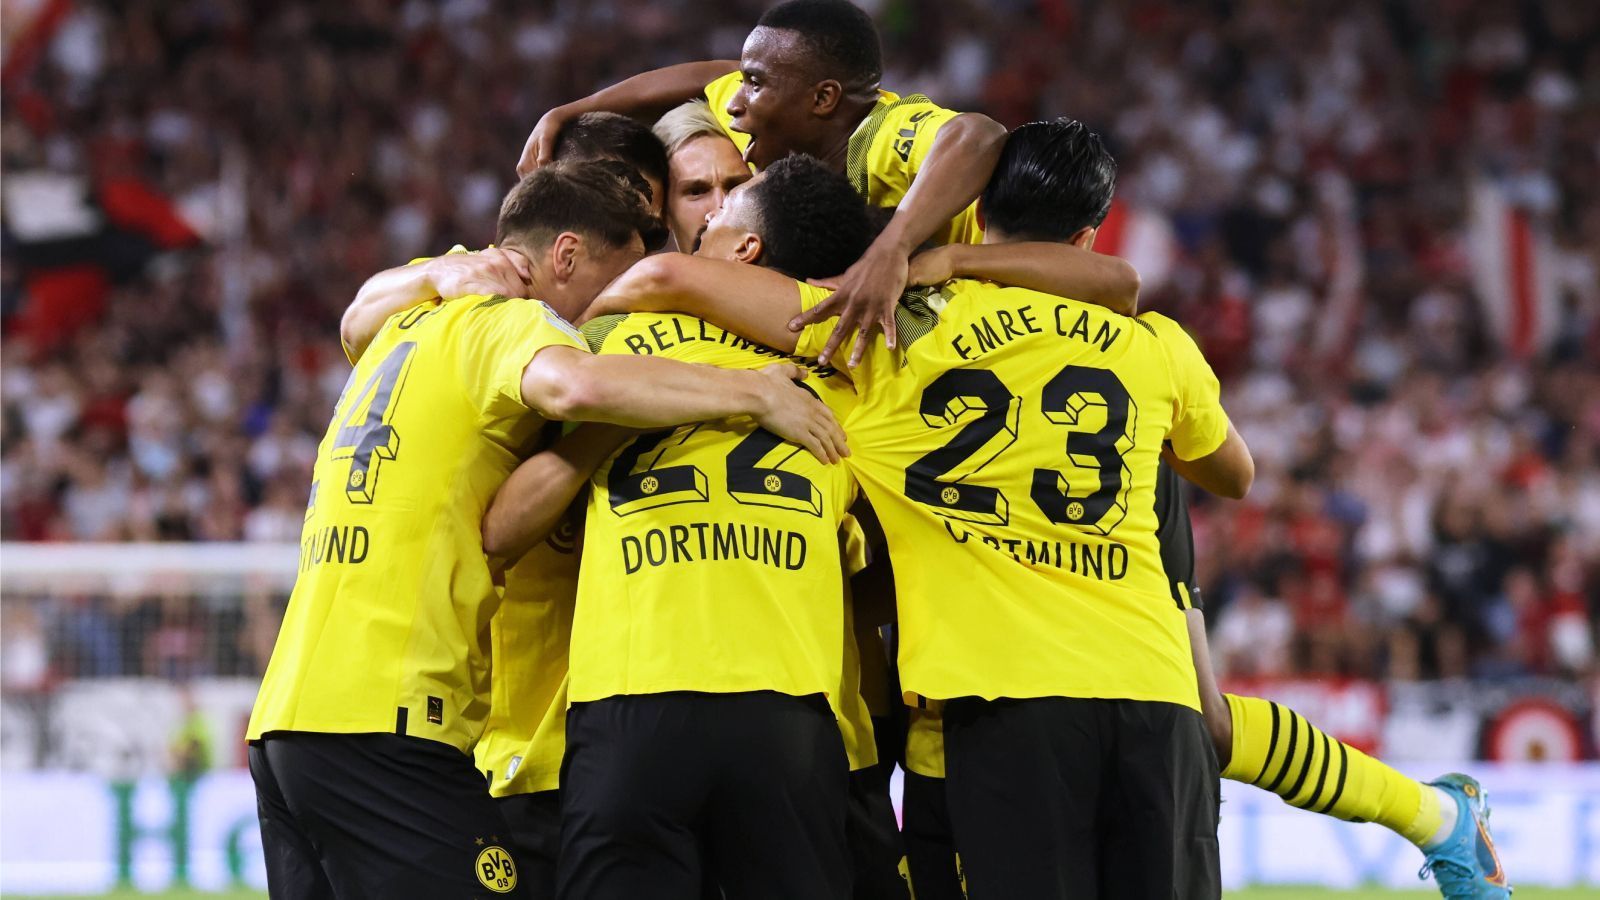 
                <strong>Platz 7: Borussia Dortmund</strong><br>
                Die Champions-League-Saison von Borussia Dortmund steht in völligem Kontrast zur bisherigen Bundesliga-Saison der Schwarz-Gelben. Während der BVB in der heimischen Liga eine wacklige Leistung nach der nächsten abliefert, waren alle drei Spiele in der Königsklasse überzeugend. Einem mehr als souveränen 3:0 gegen Kopenhagen folgte eine knappe wie unglückliche 1:2-Niederlage gegen Manchester City, dem wohl formstärksten Klub derzeit in ganz Europa. Zuletzt besiegte Schwarz-Gelb den FC Sevilla trotz enger Personaldecke auswärts mit 4:1. Bei fünf Punkten Vorsprung vor Platz drei wird es schwer, dem BVB noch Platz eins oder zwei zu nehmen.
              